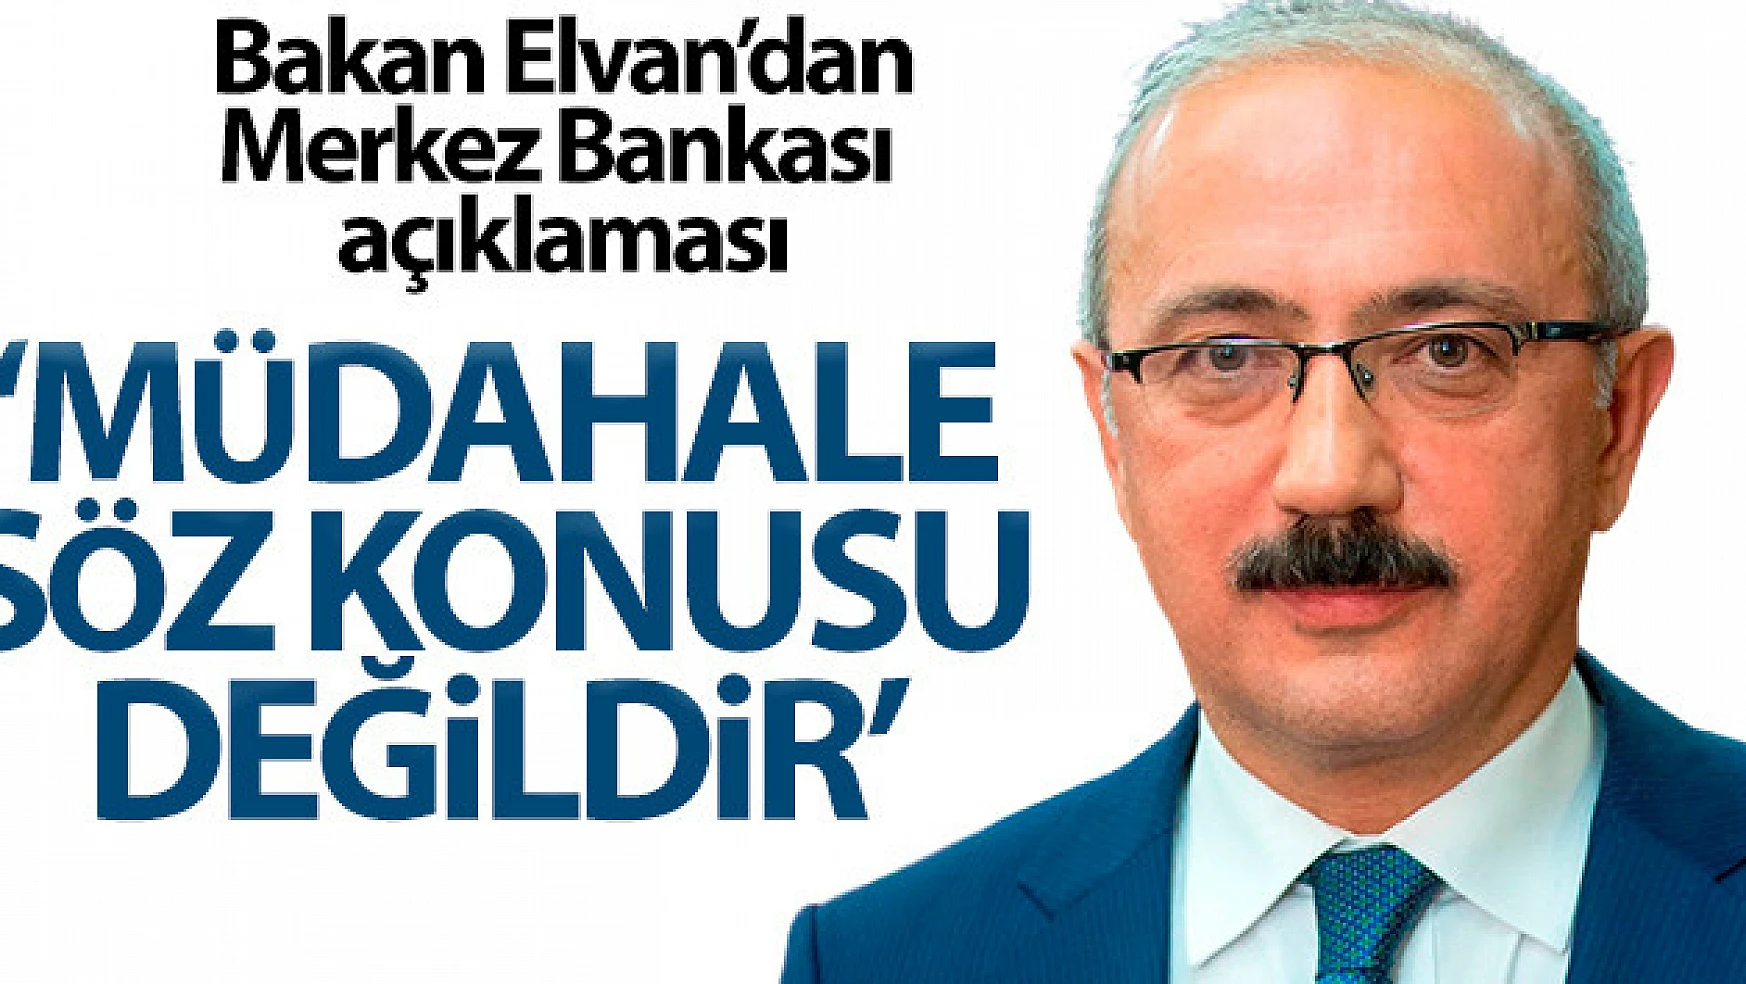 Bakan Elvan: 'Merkez Bankası'na müdahale söz konusu değildir'